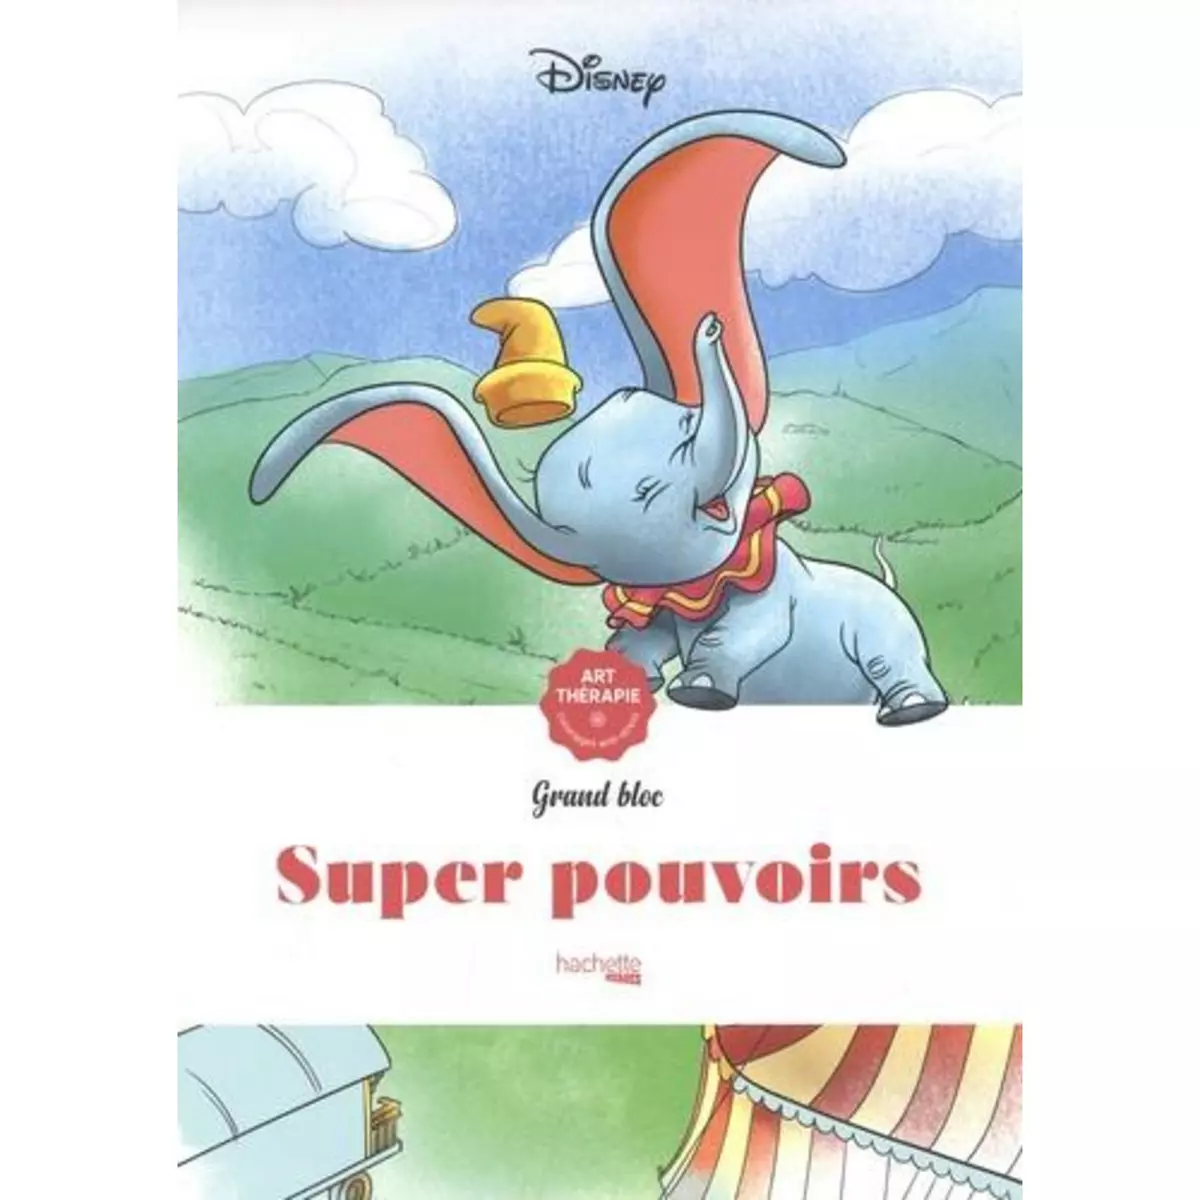  SUPER POUVOIRS, Disney